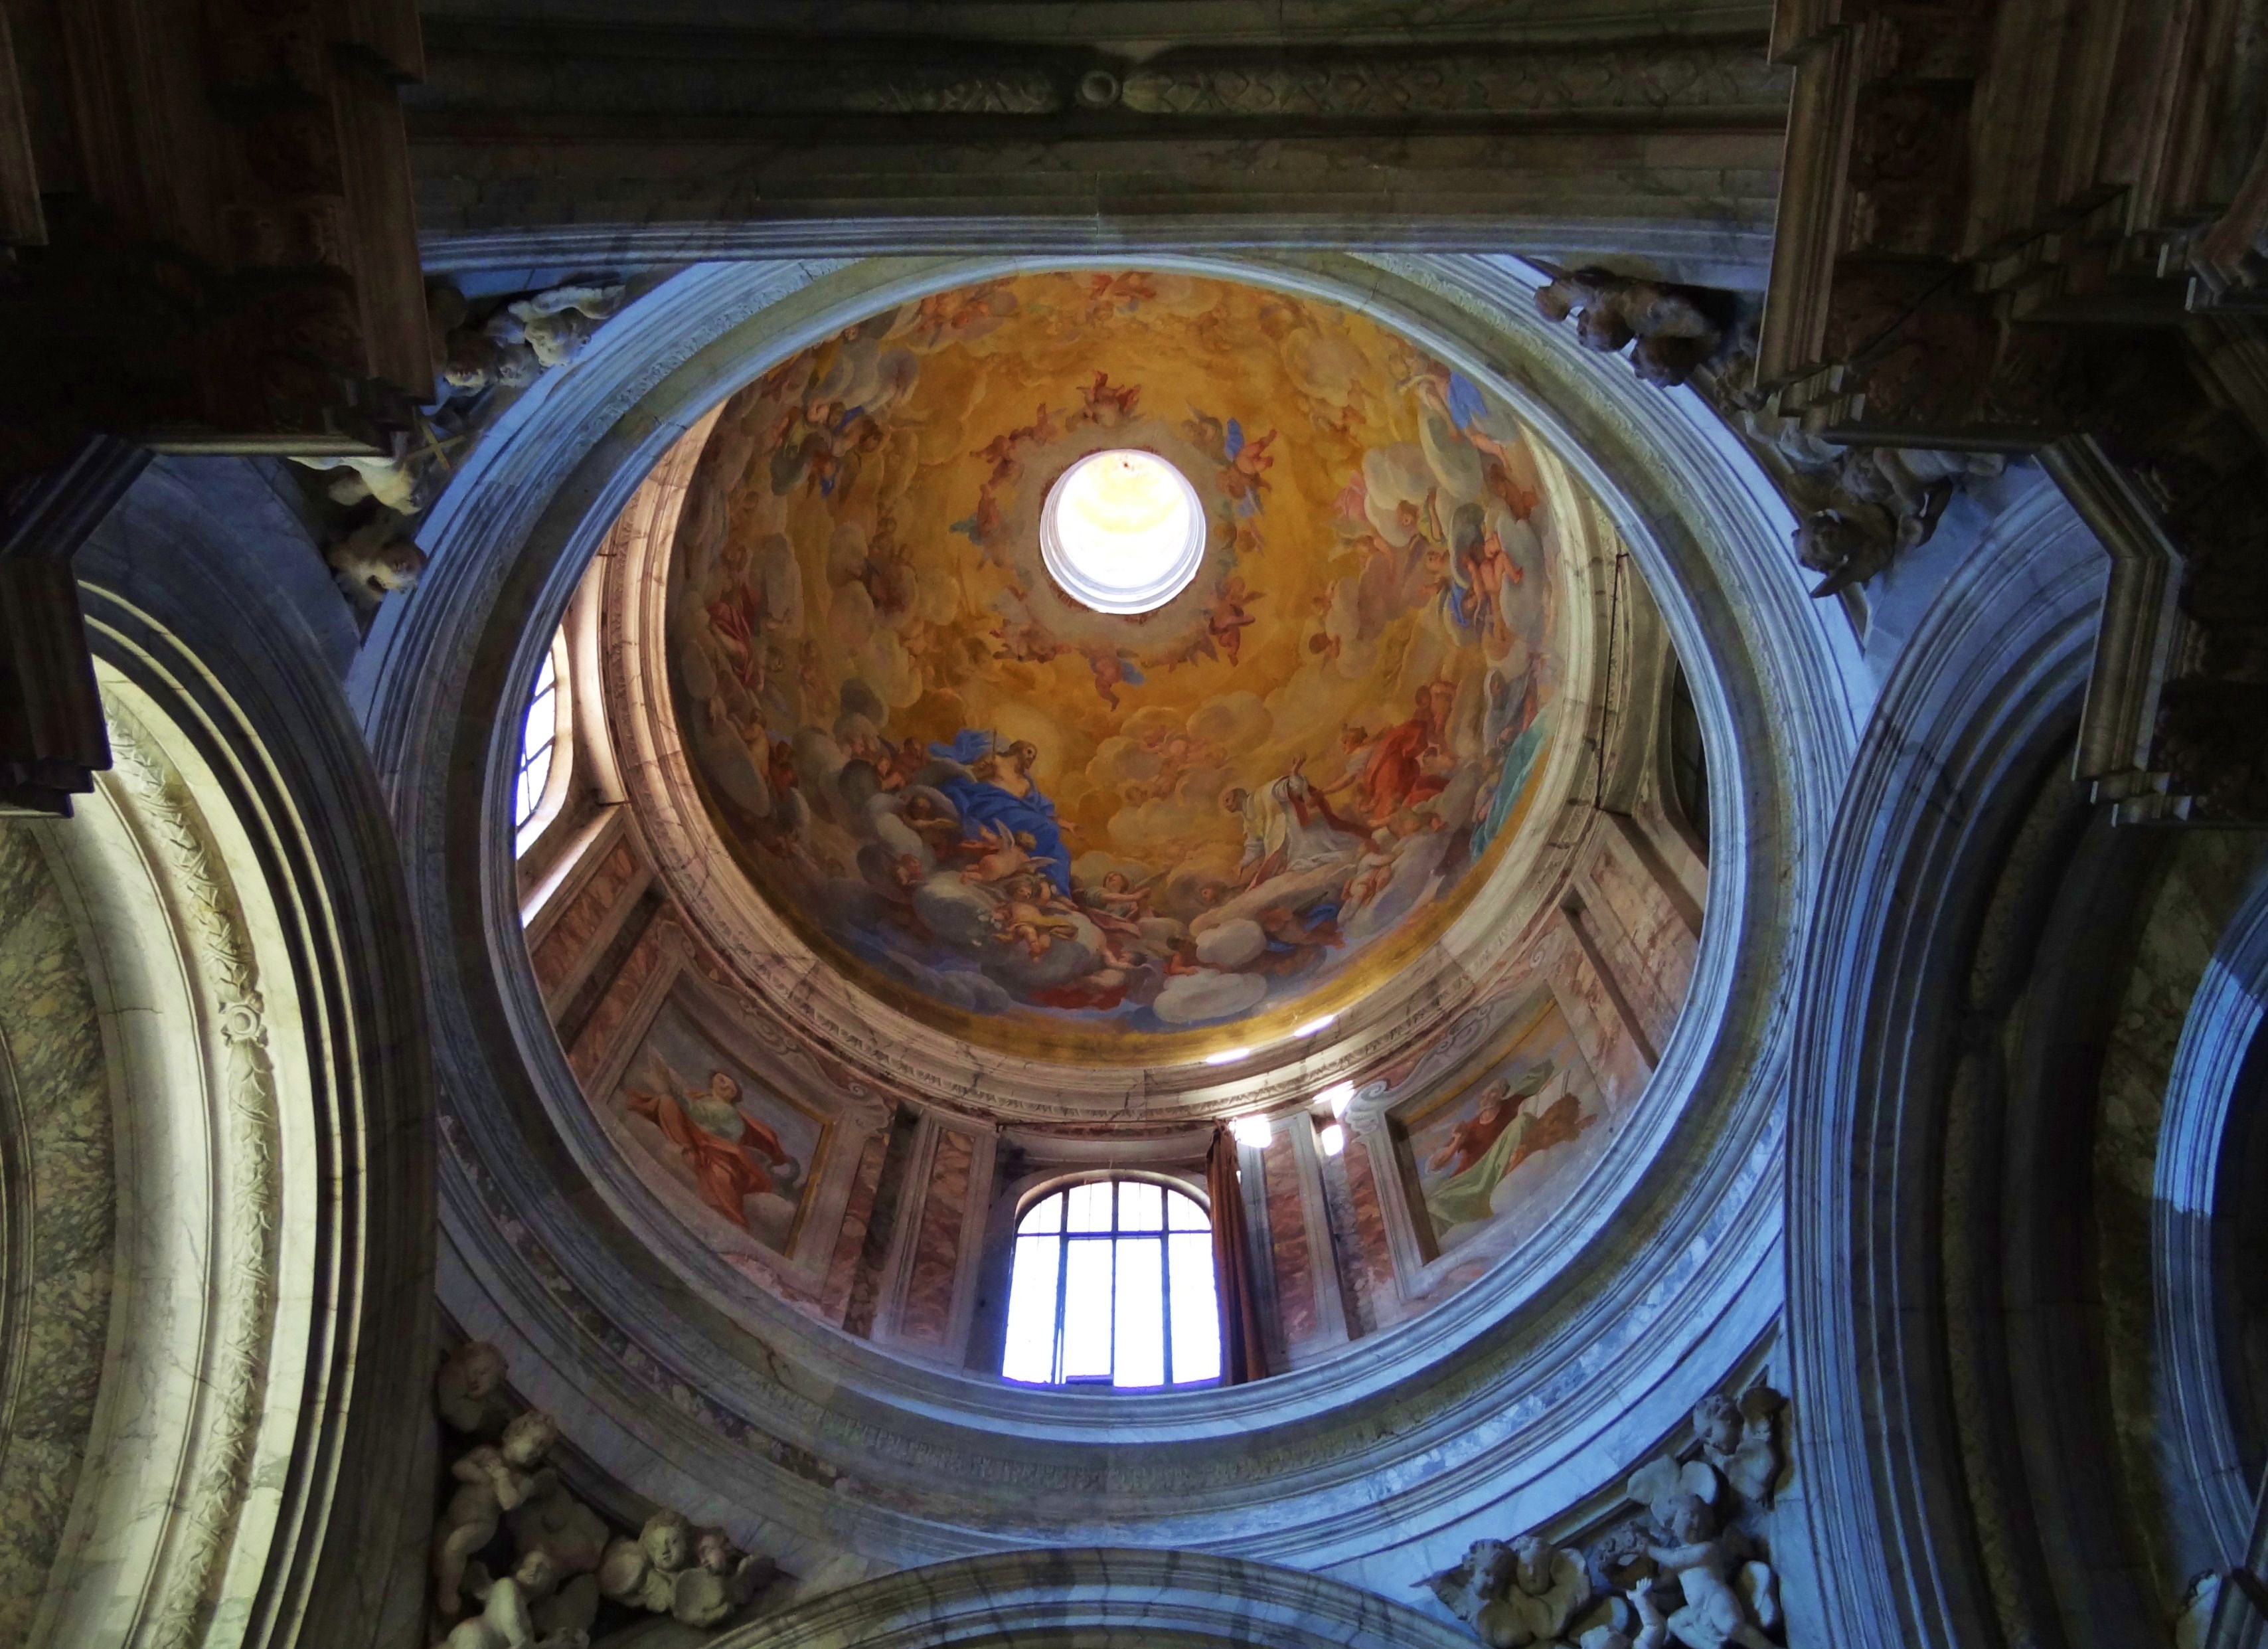 Foto: Chiesa dei Santi Giovanni e Reparata - Lucca (Tuscany), Italia